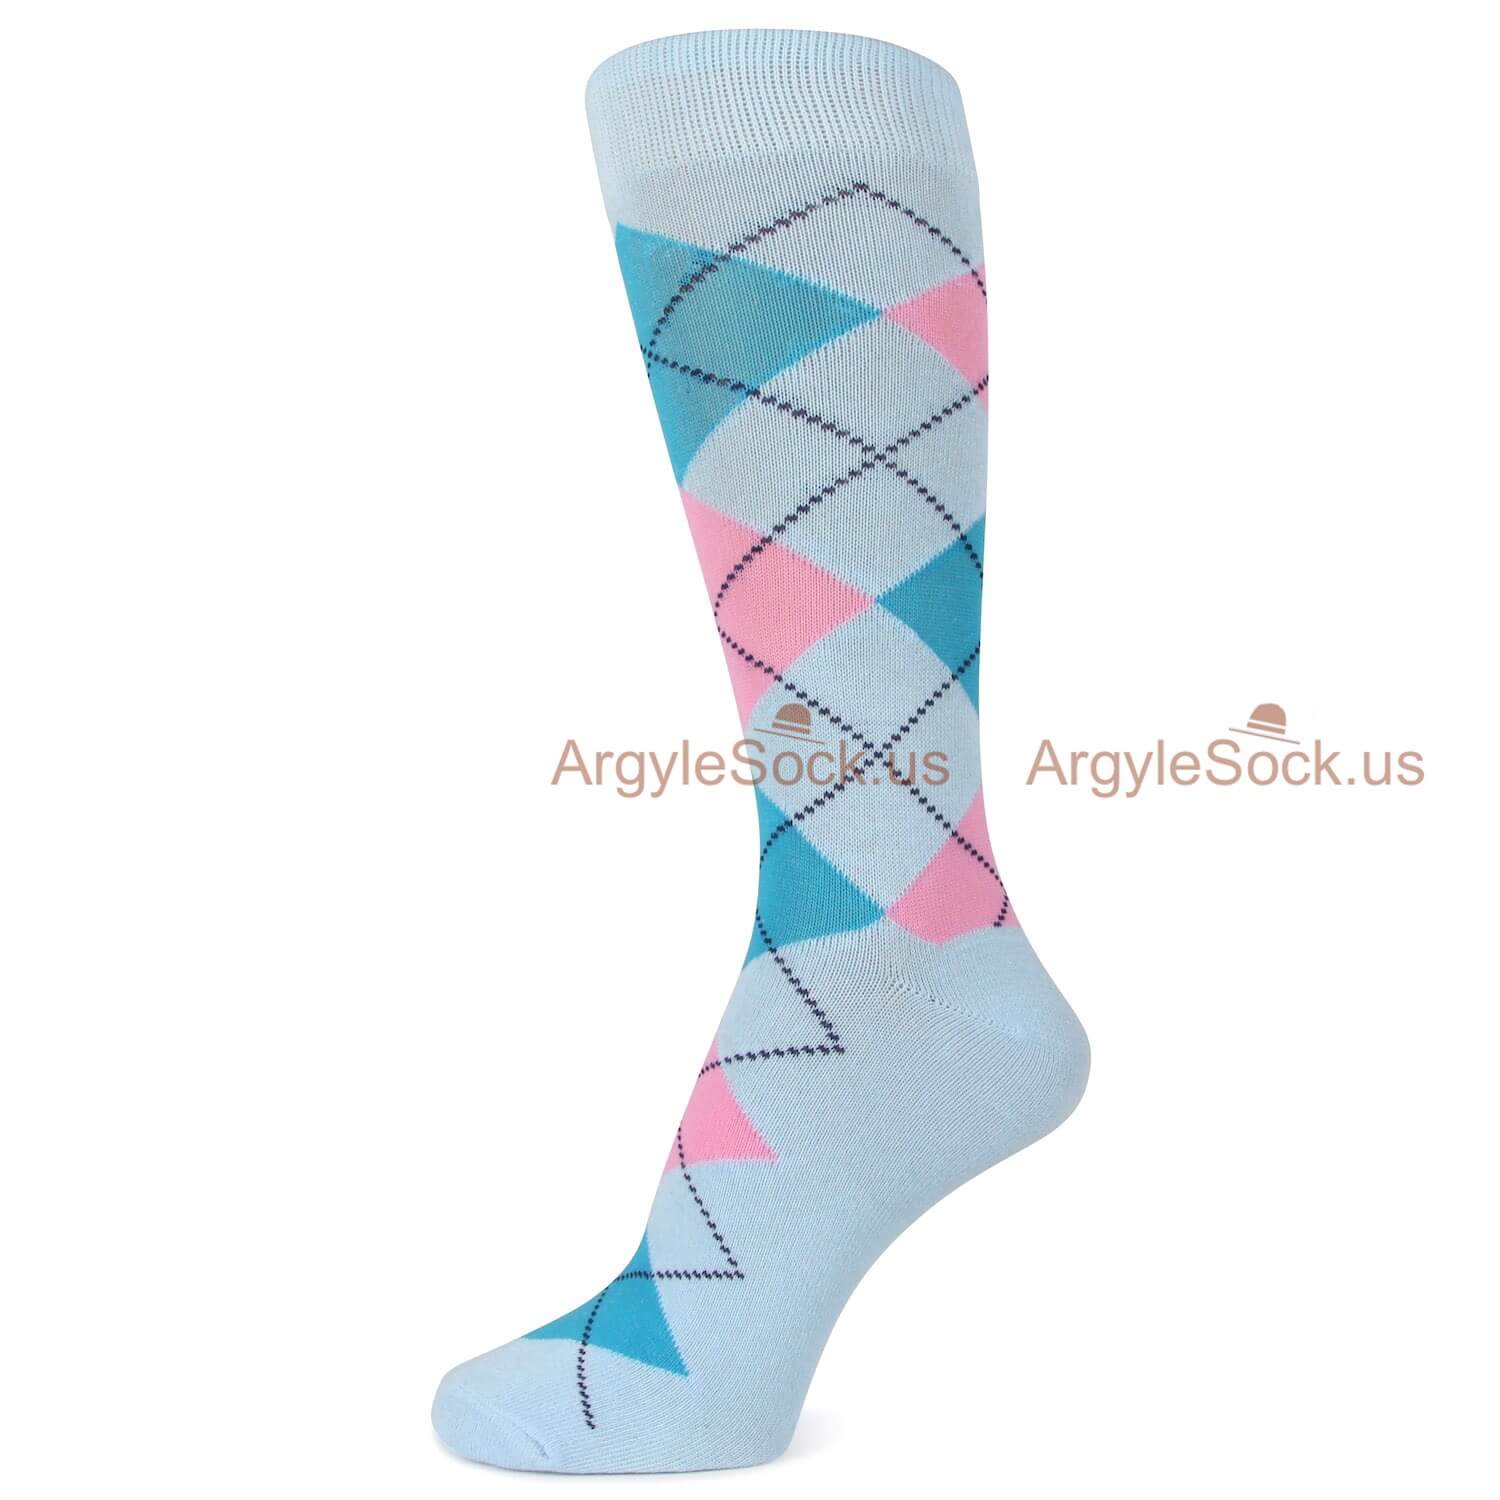 Light Blue and Pink Argyle Socks for Men